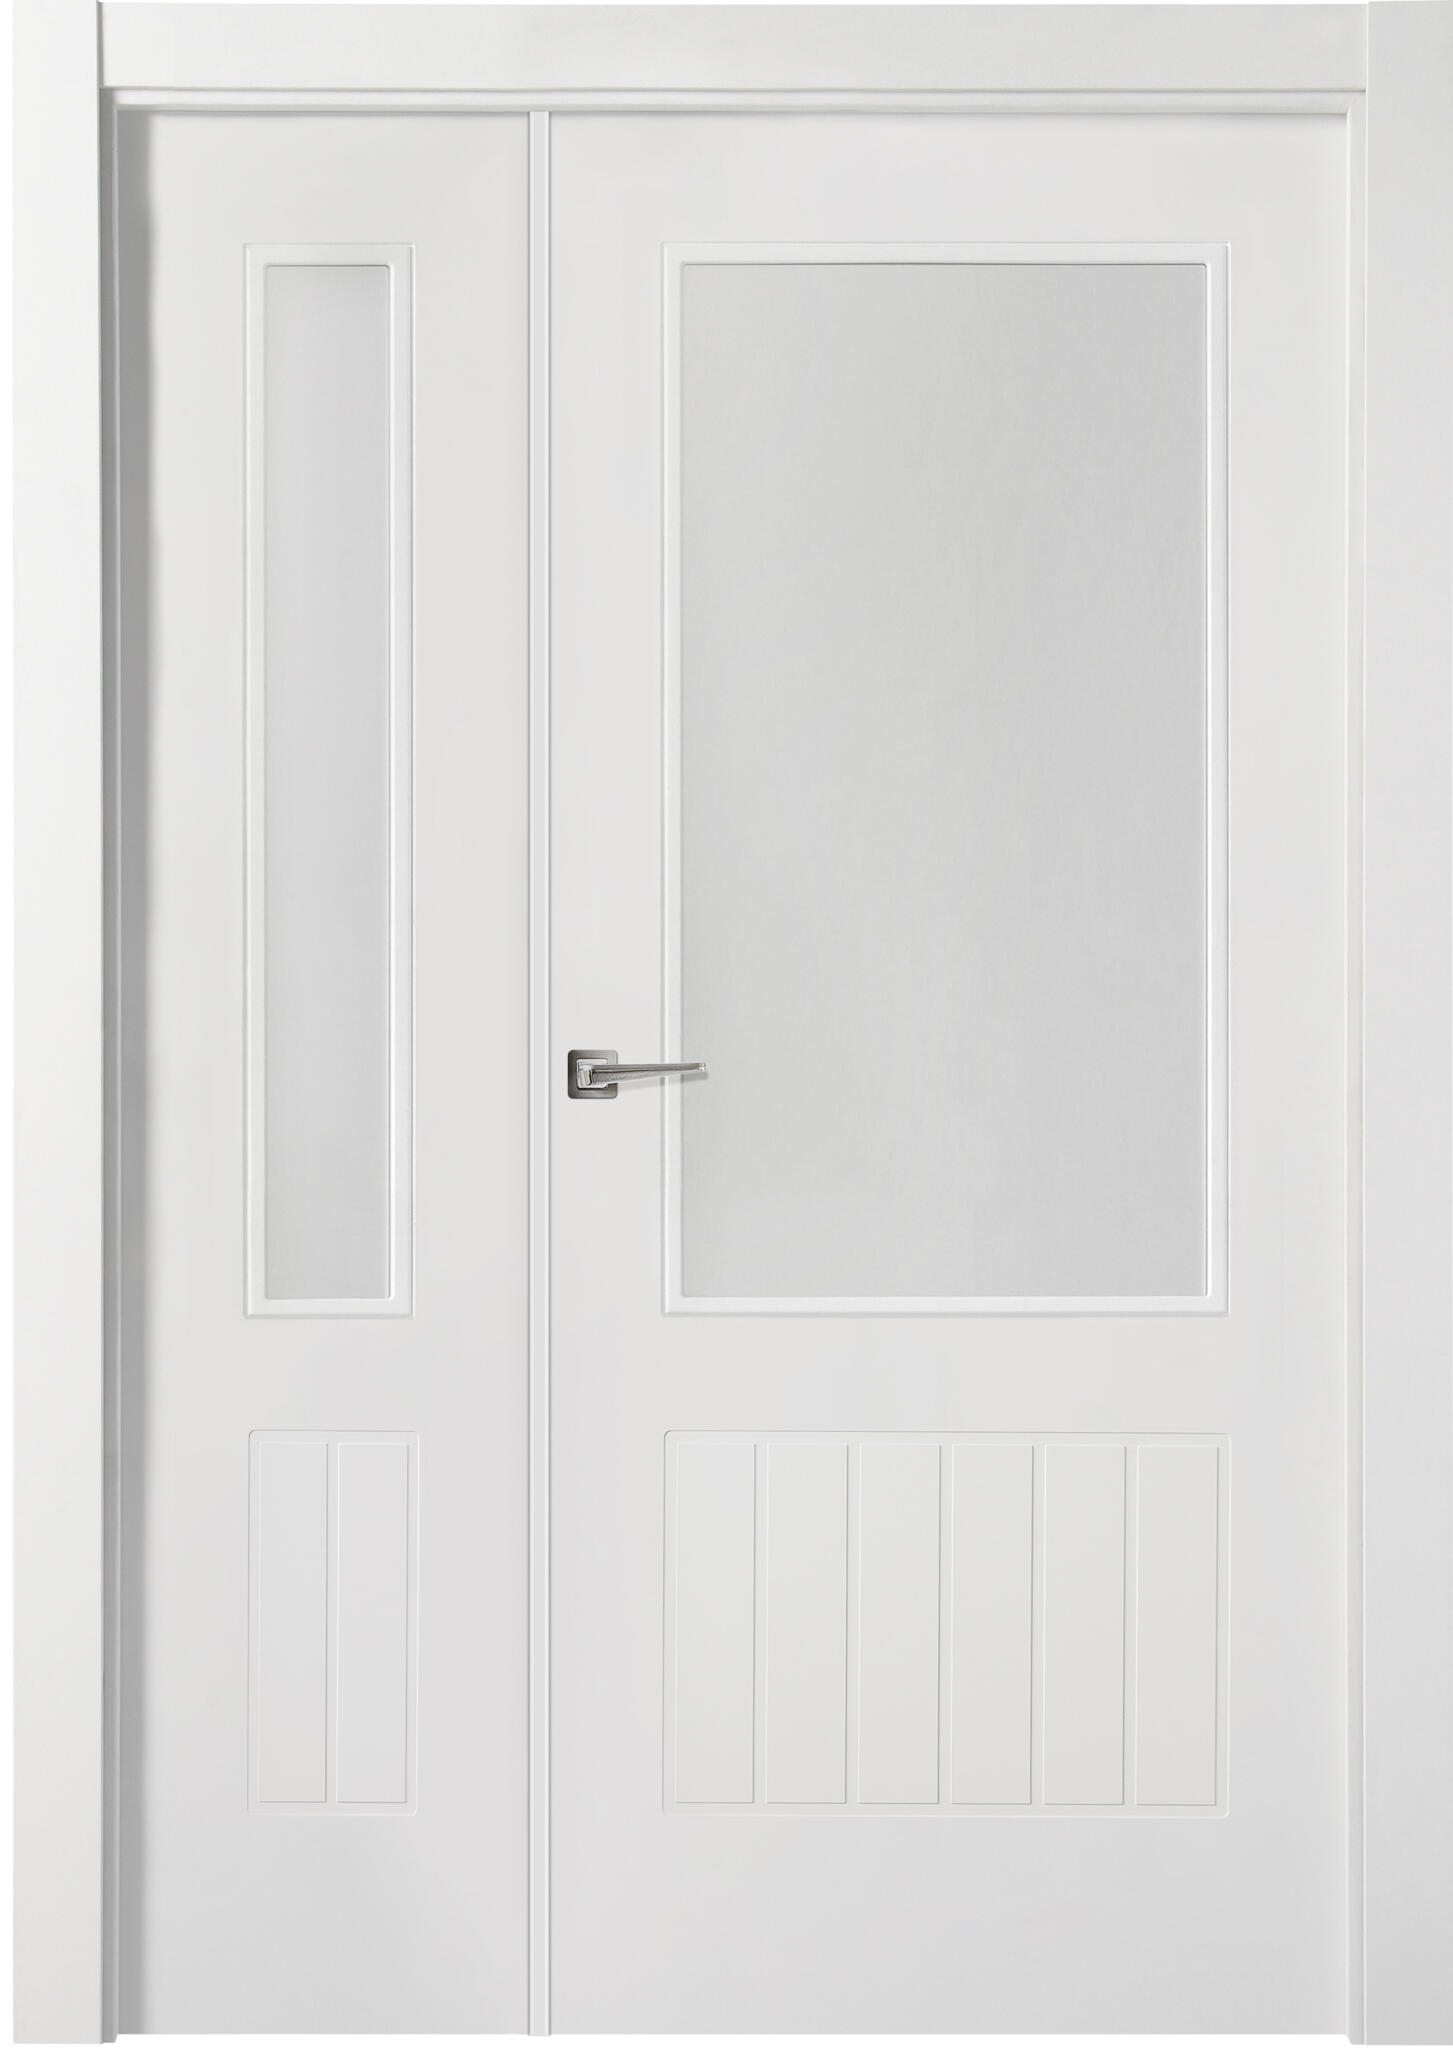 Puerta madison plus blanco apertura izquierda con cristal 125 cm